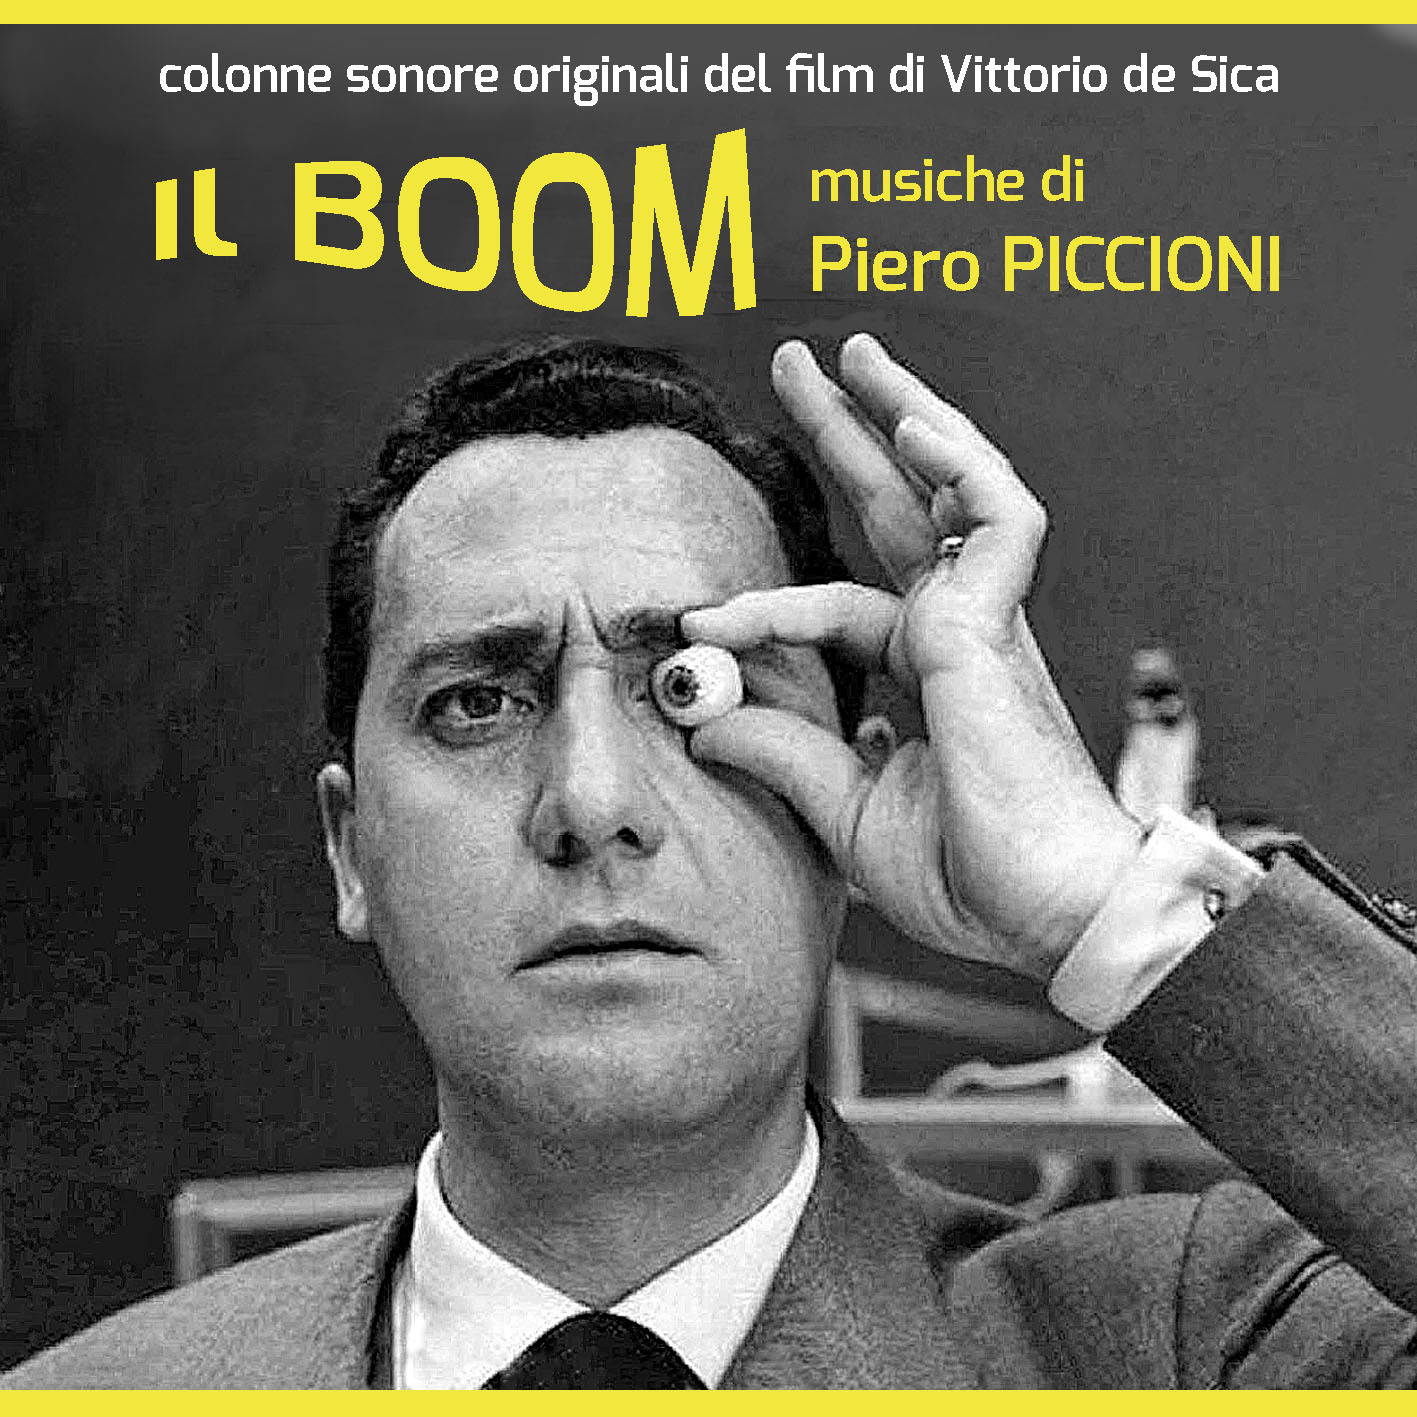 Il Boom (The Boom)